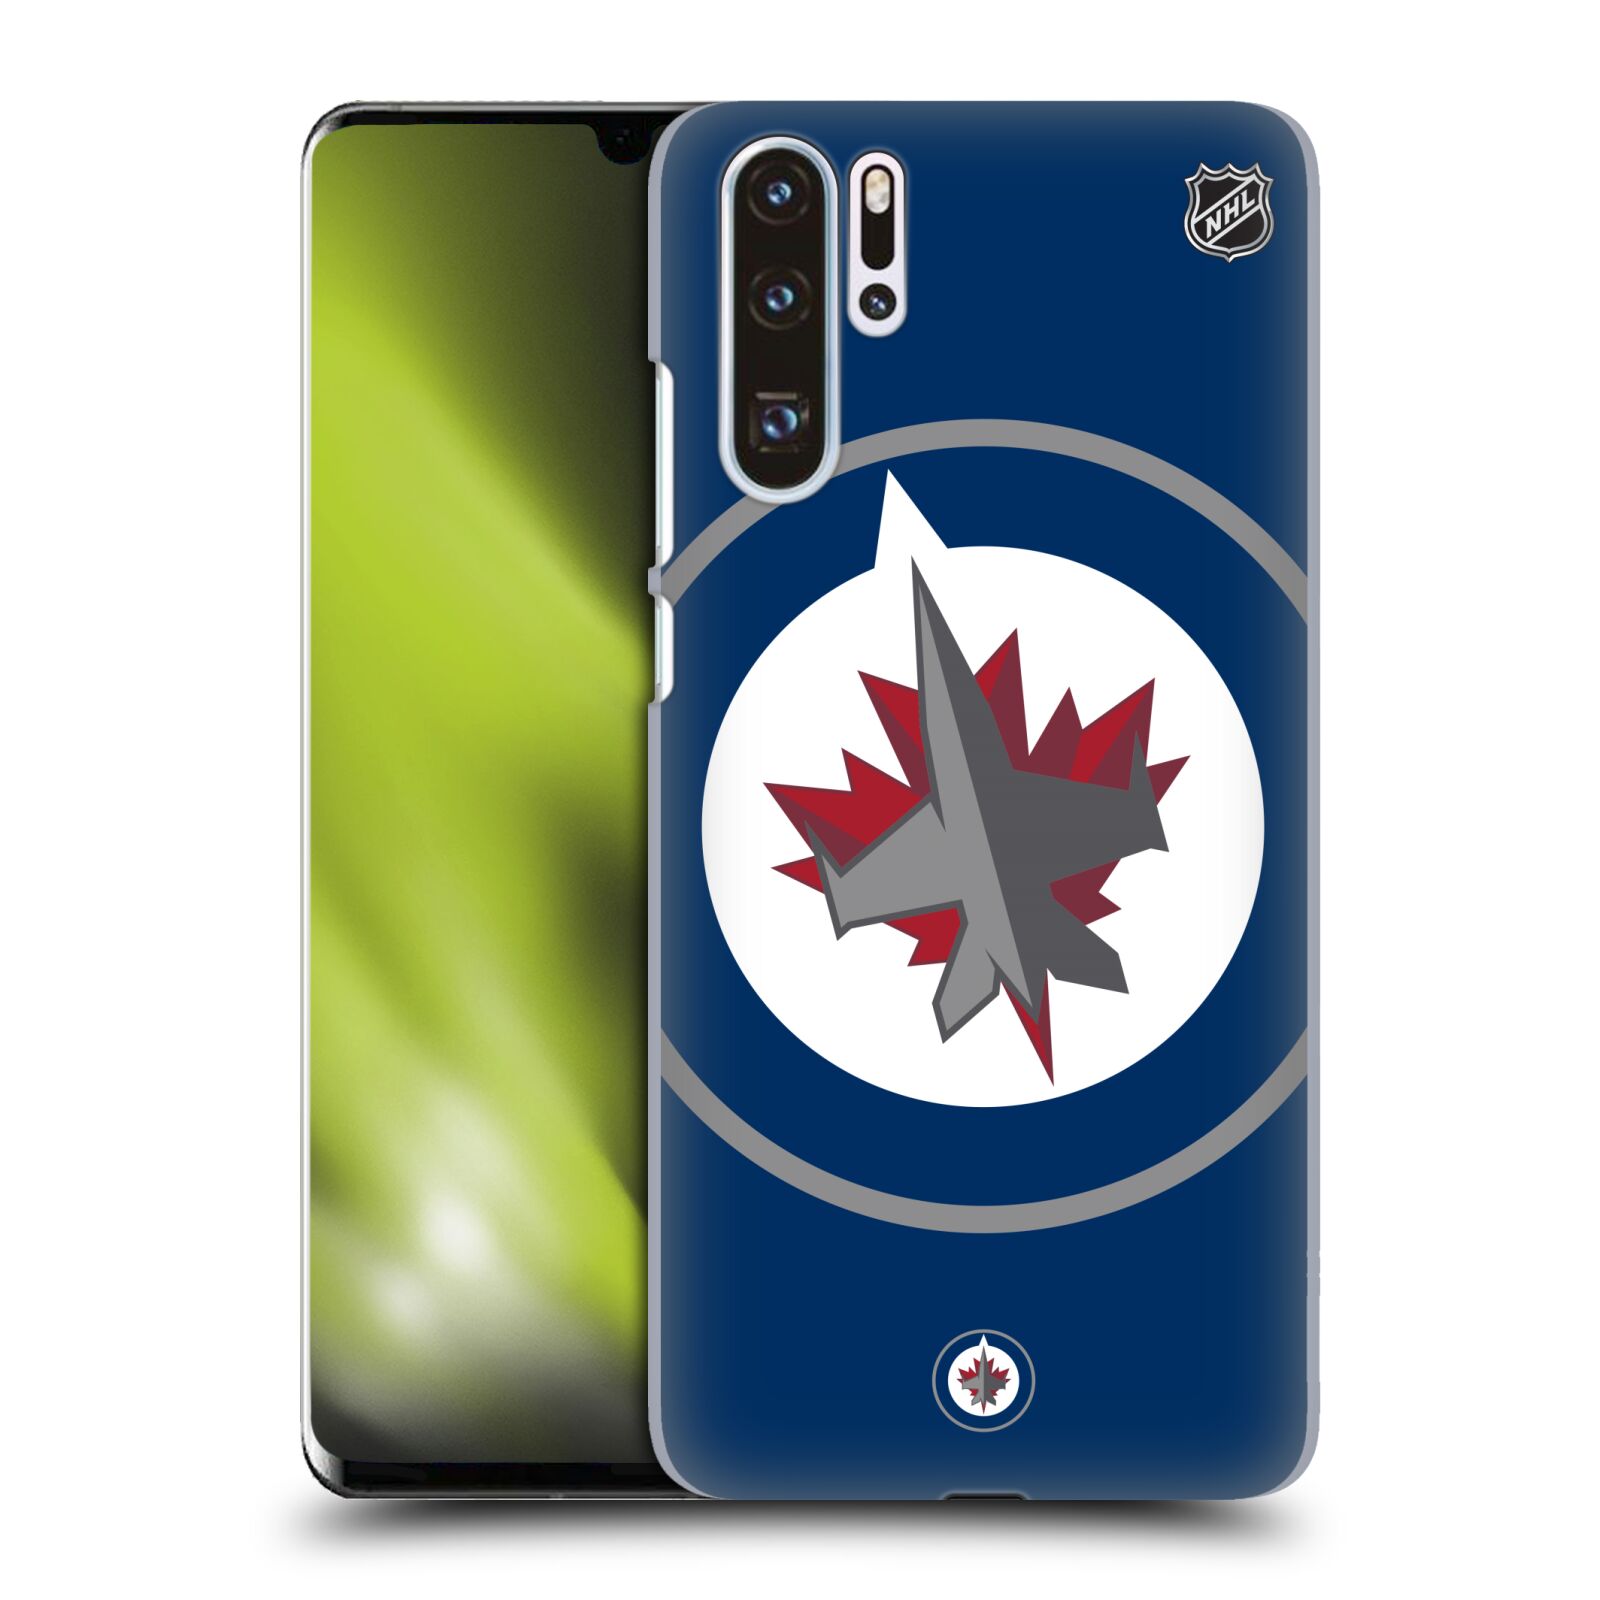 Zadní obal pro mobil Huawei P30 PRO - HEAD CASE - HEAD CASE - NHL - Winnipeg Jets - velký znak